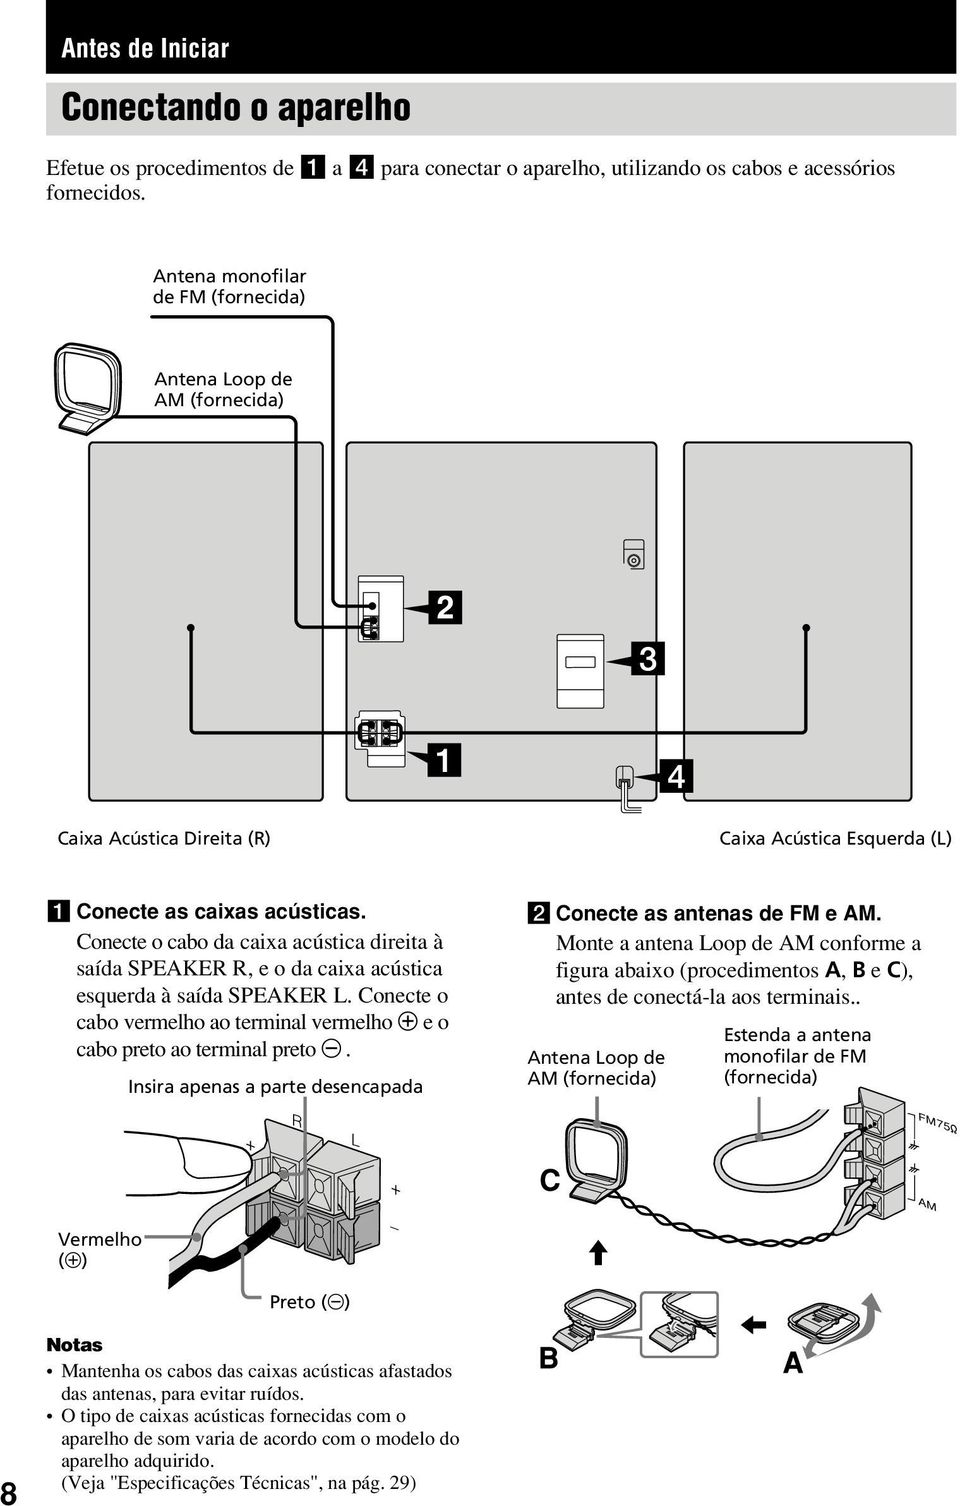 Conecte o cabo da caixa acústica direita à saída SPEAKER R, e o da caixa acústica esquerda à saída SPEAKER L. Conecte o cabo vermelho ao terminal vermelho e o cabo preto ao terminal preto.